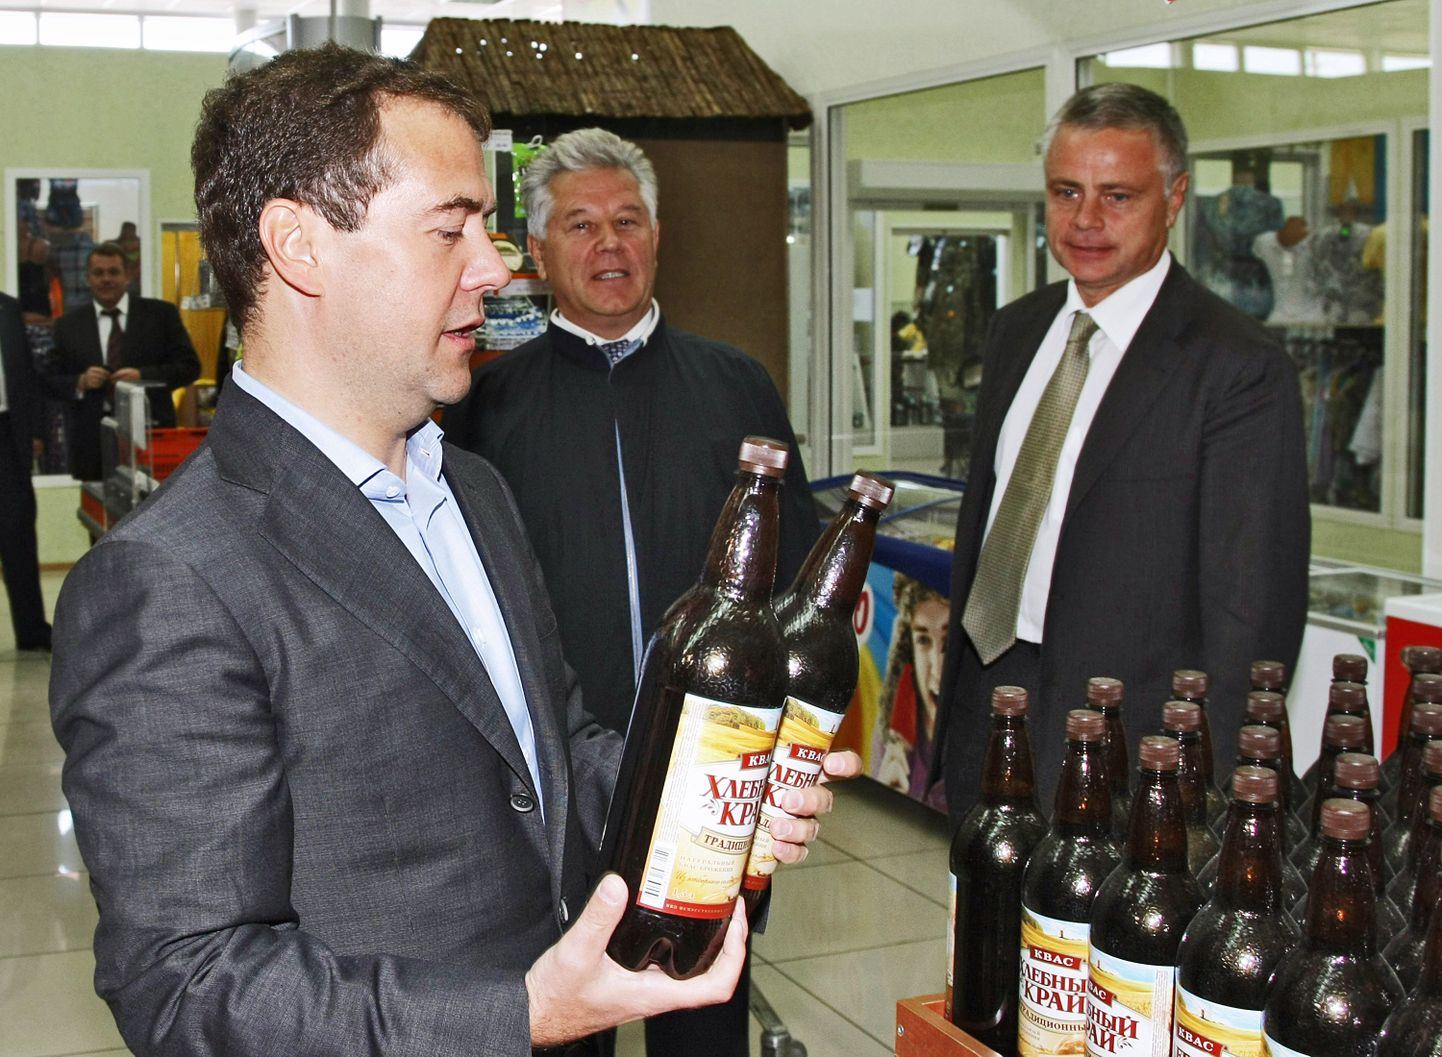 Во время незапланированной остановки в продуктовом магазине города Энгельса президент РФ Дмитрий Медведев купил 2 бутылки кваса.